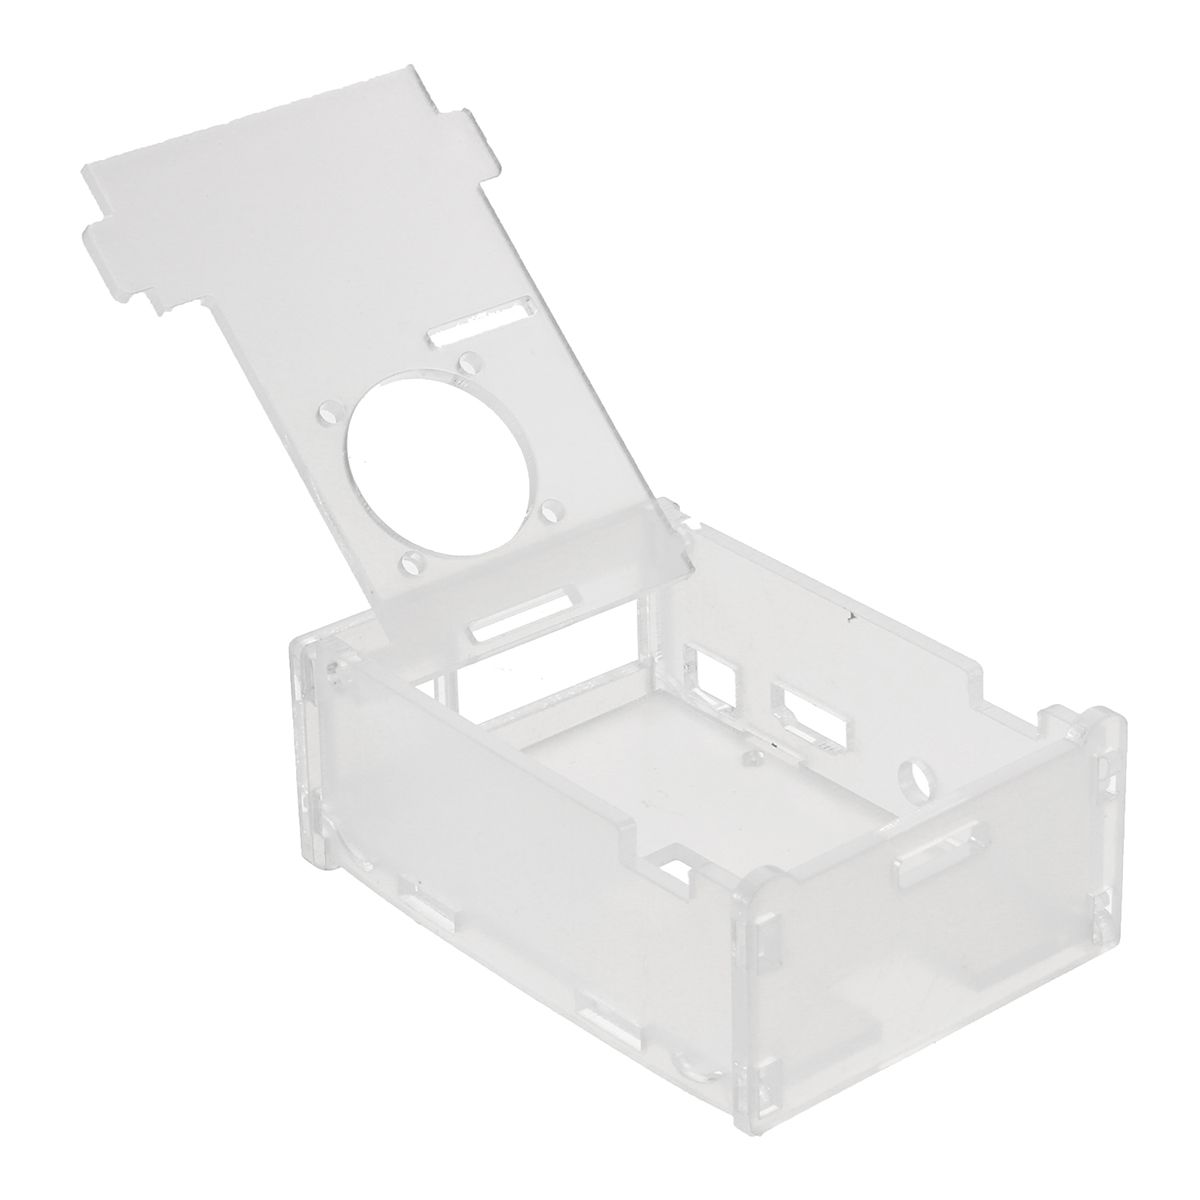 3x-Heat-Sink-Kit-Transprent-Acrylic-CaseCooling-Fan-For-Raspberry-Pi-3-Model-B-1202359